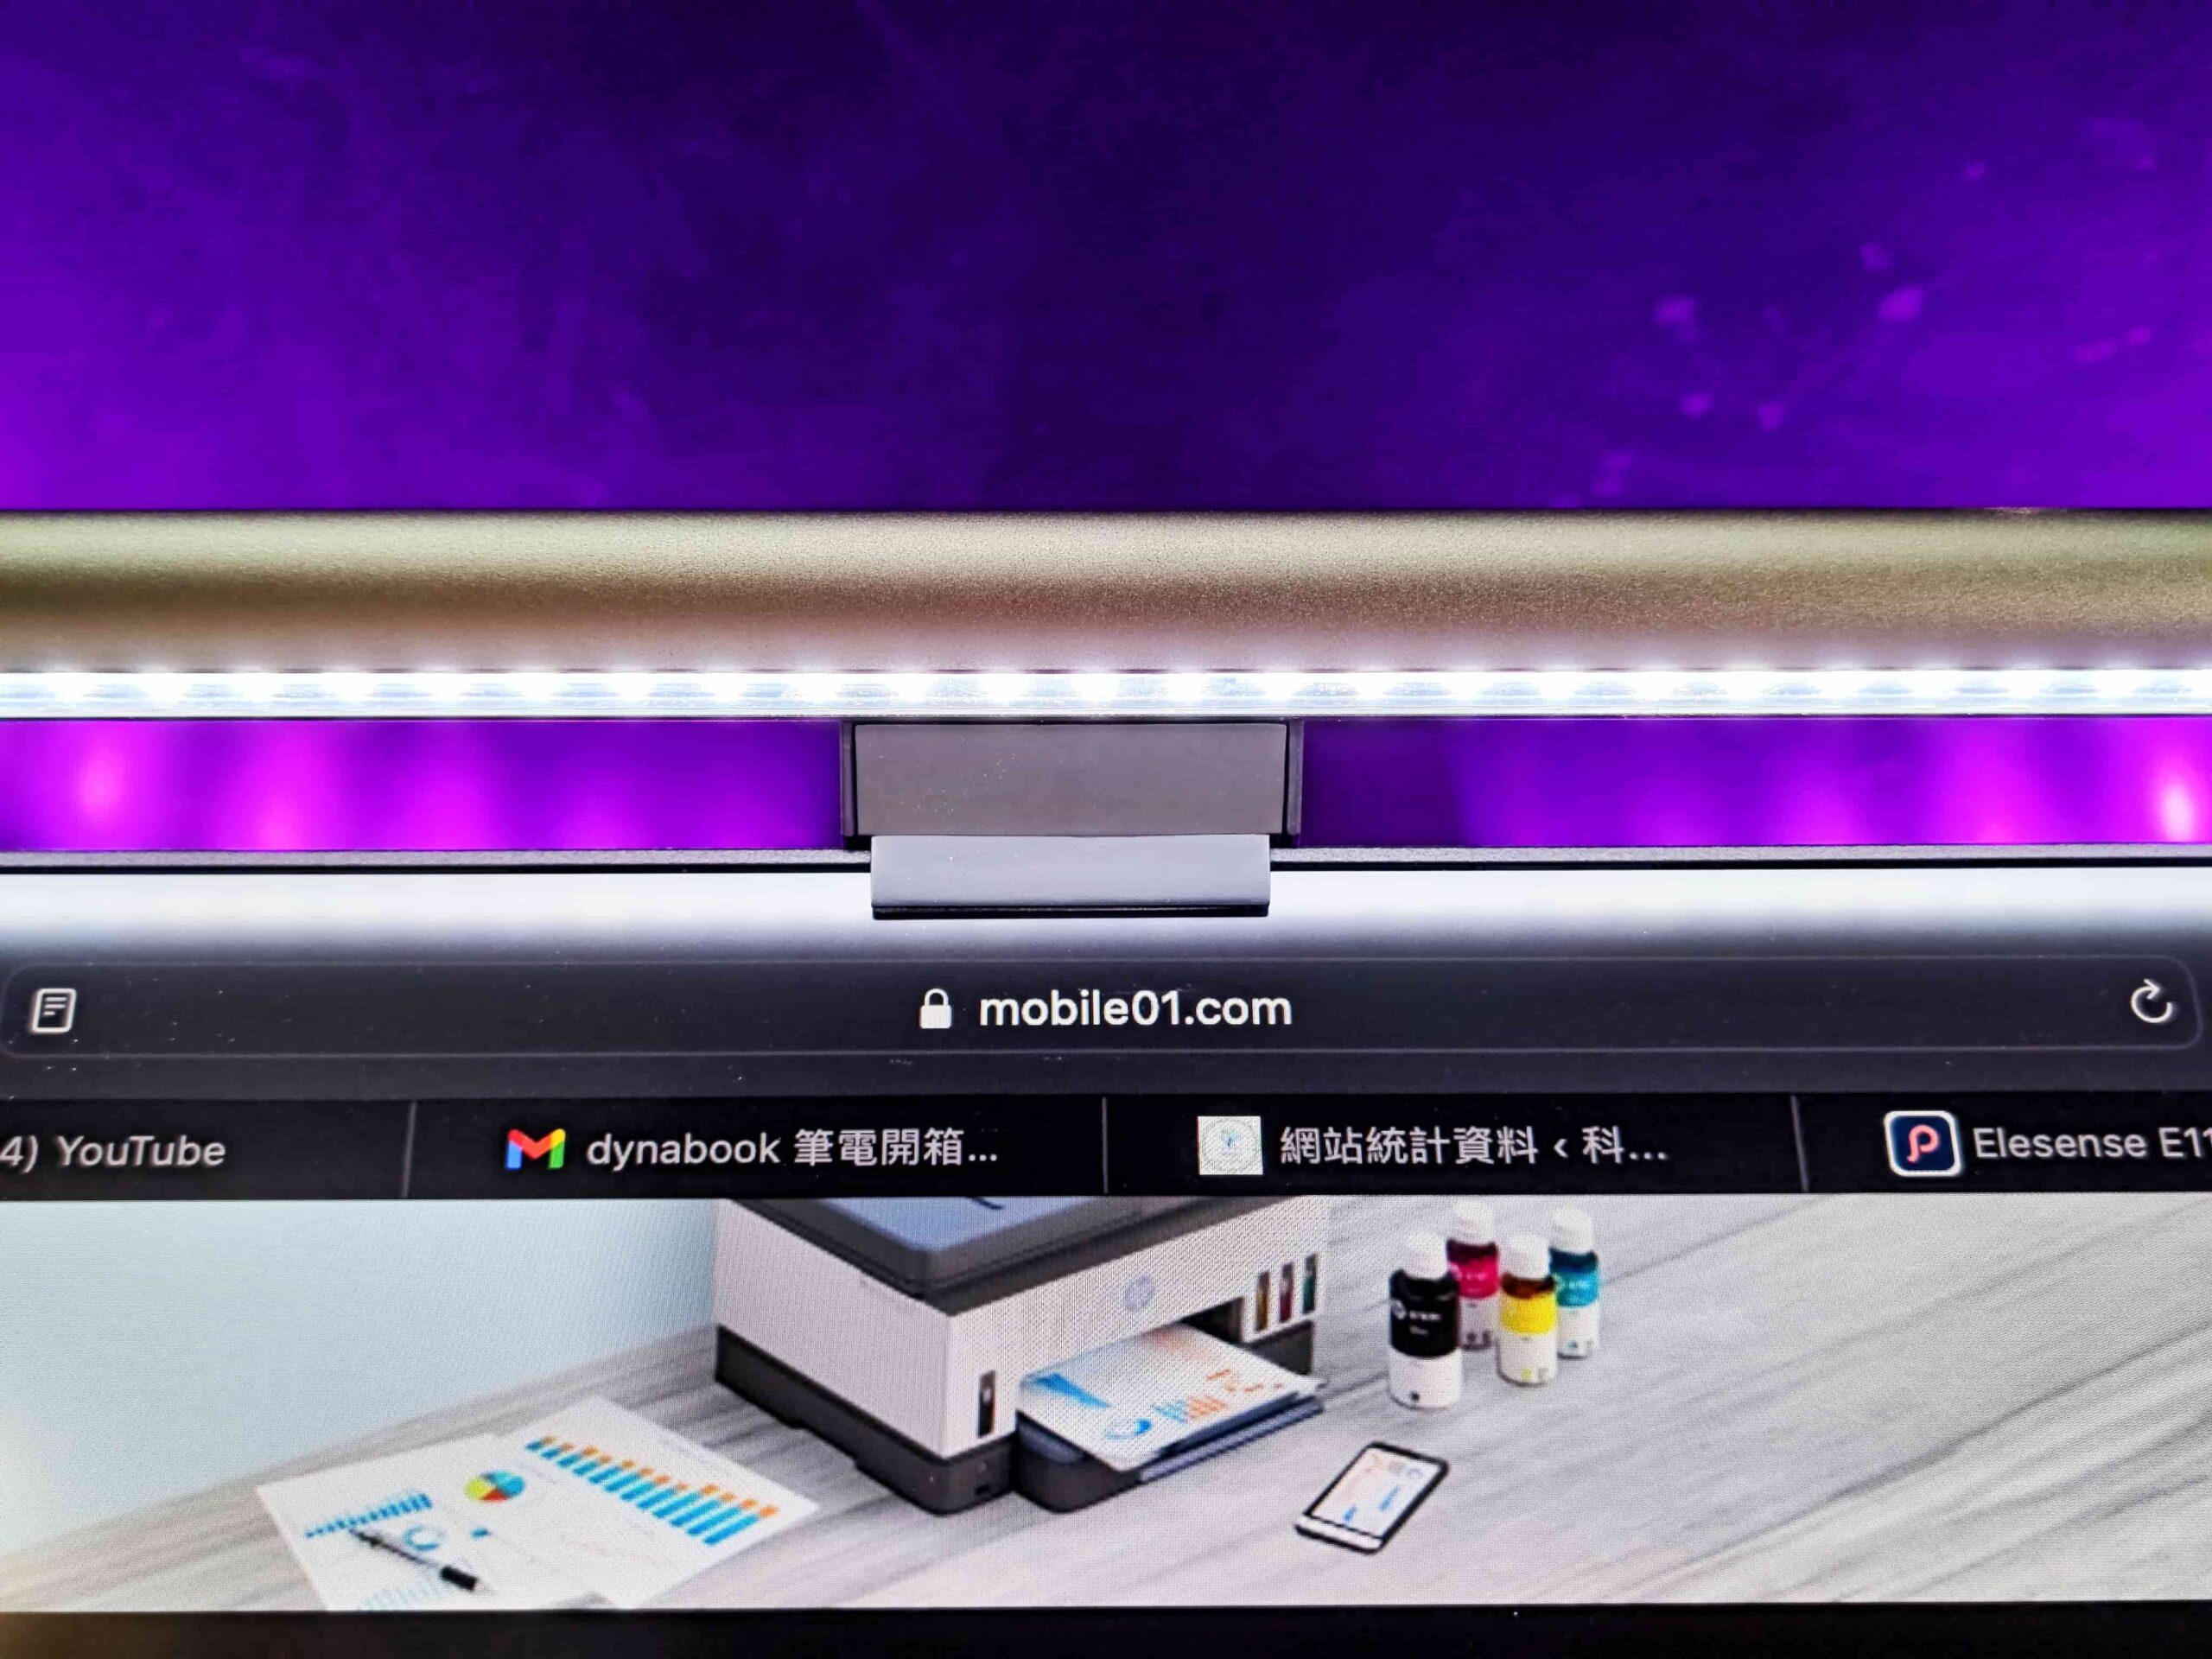 Elesense Uni-Light 智慧電腦螢幕掛燈開箱 – 雙色溫提升亮度、無線切換超方便